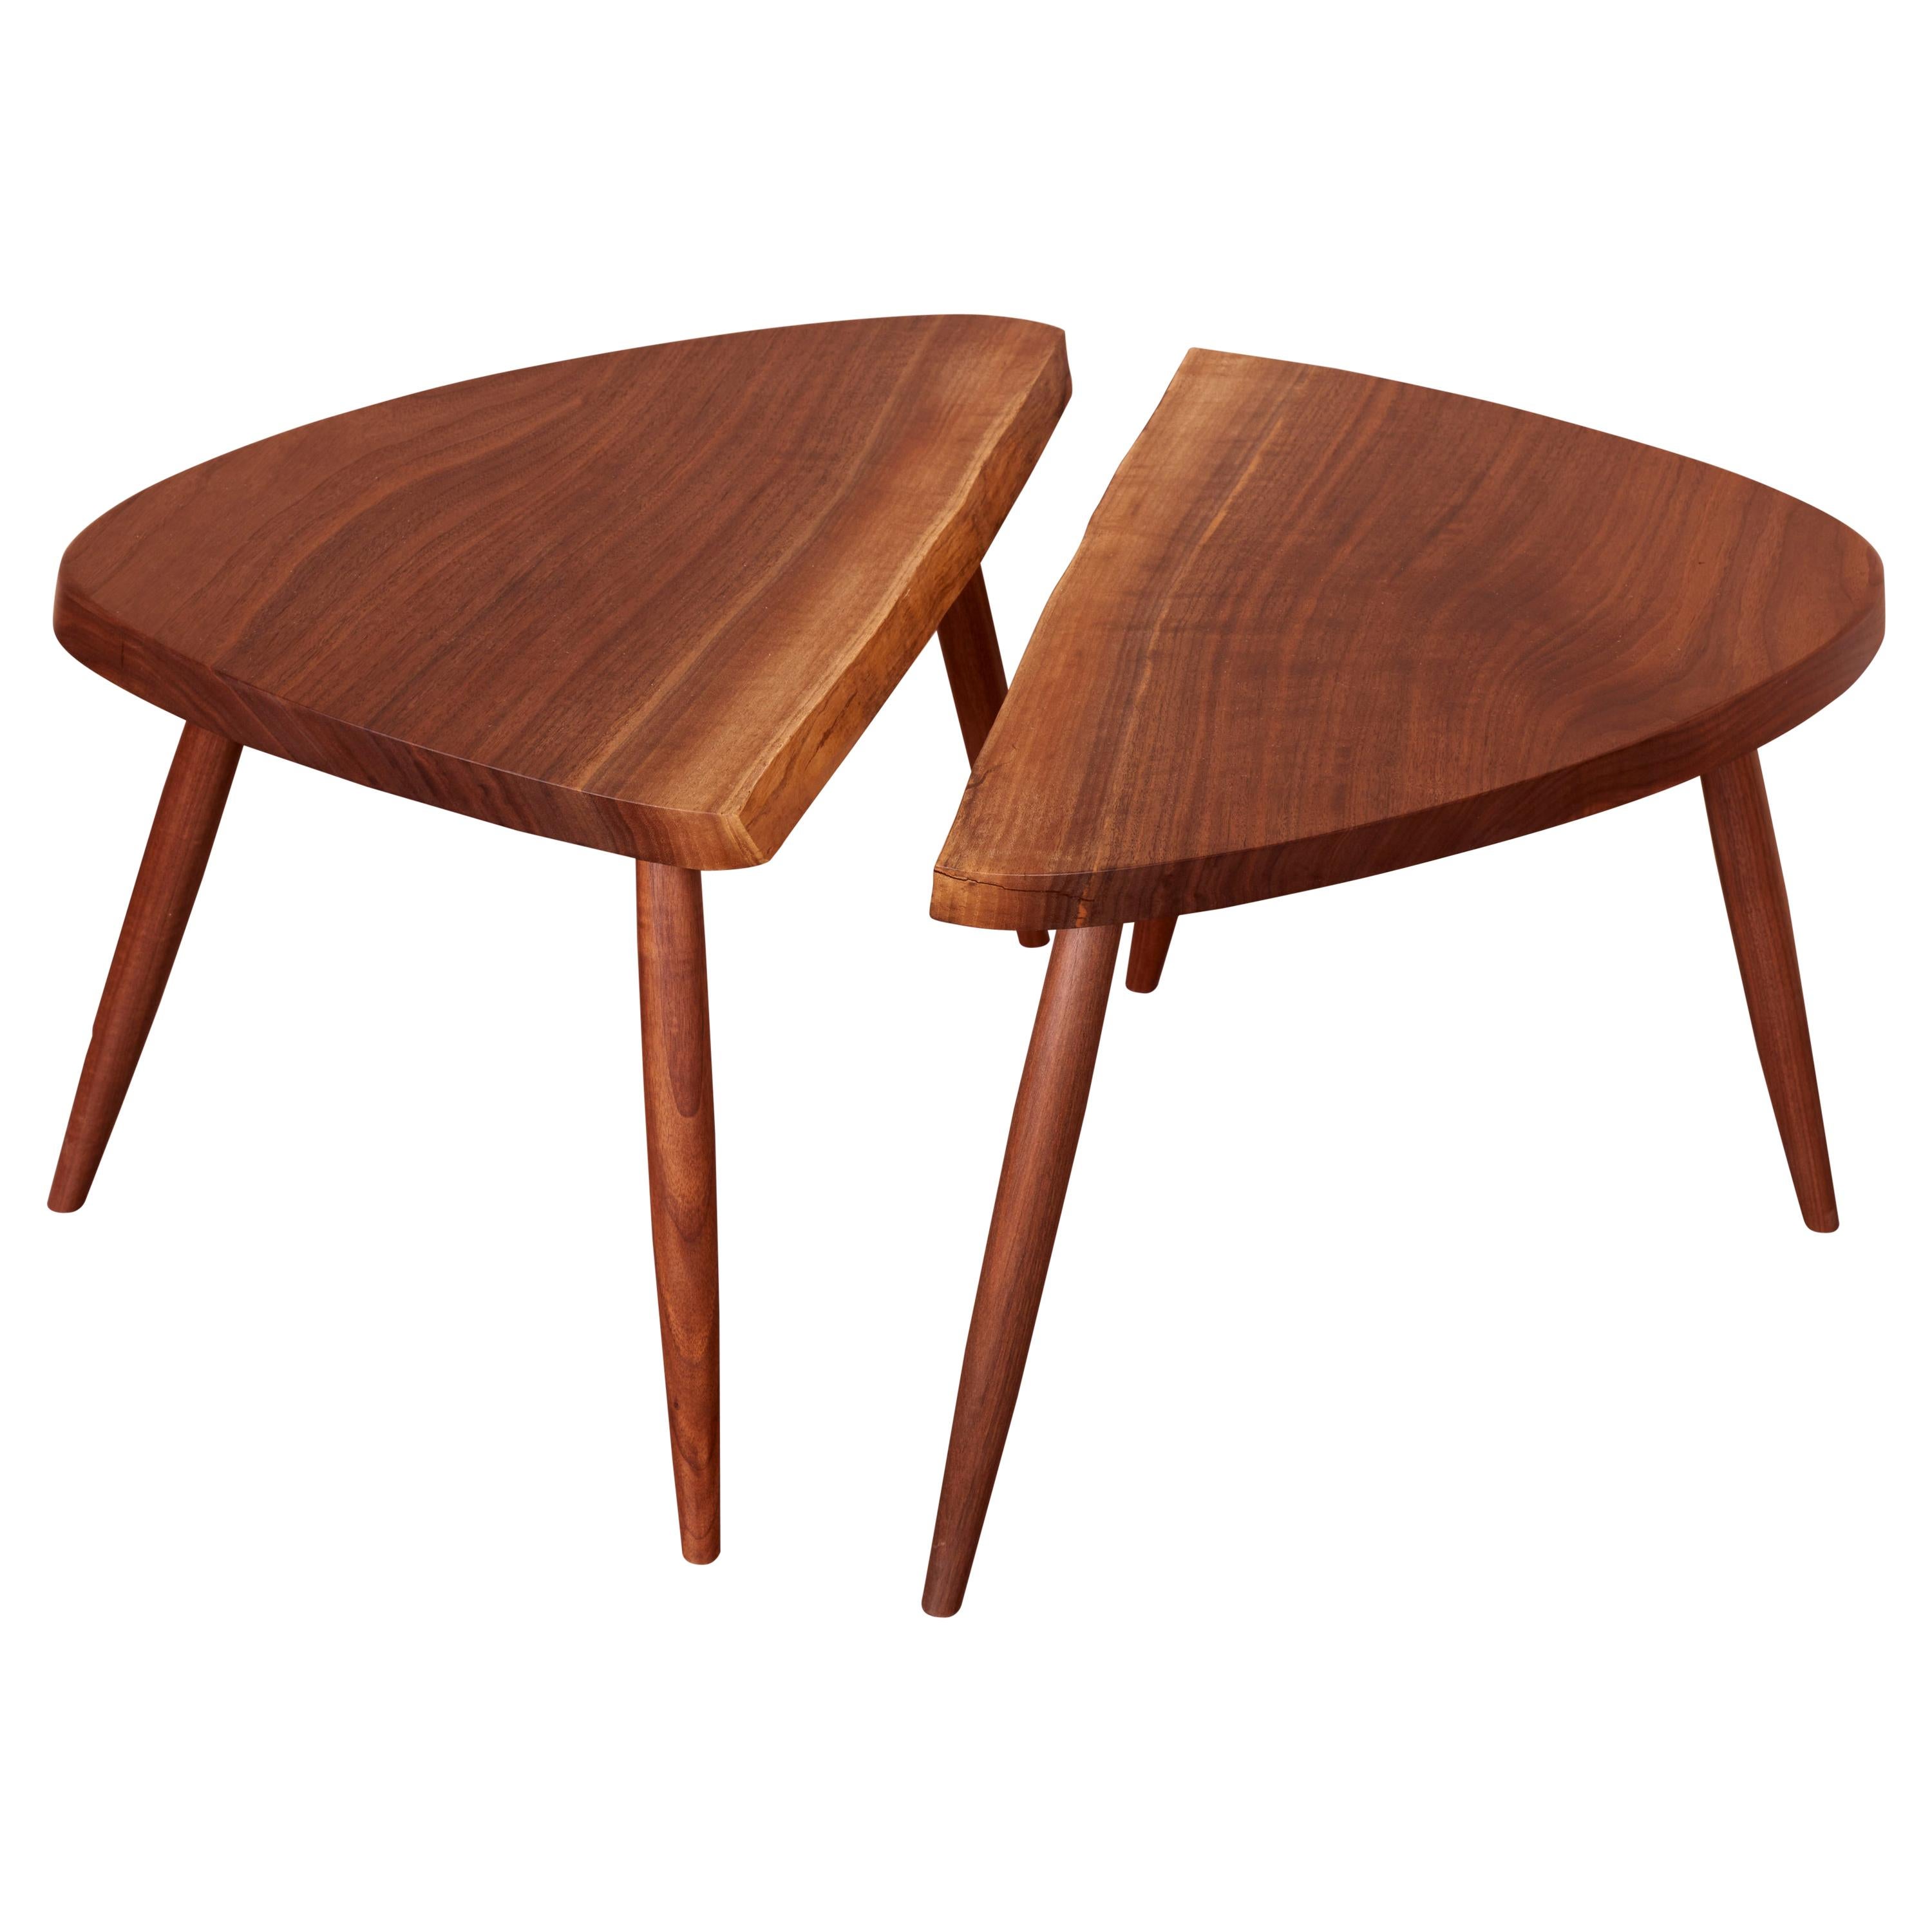 Paire de tables d'appoint Mira Nakashima Wepman basées sur un design de George Nakashima